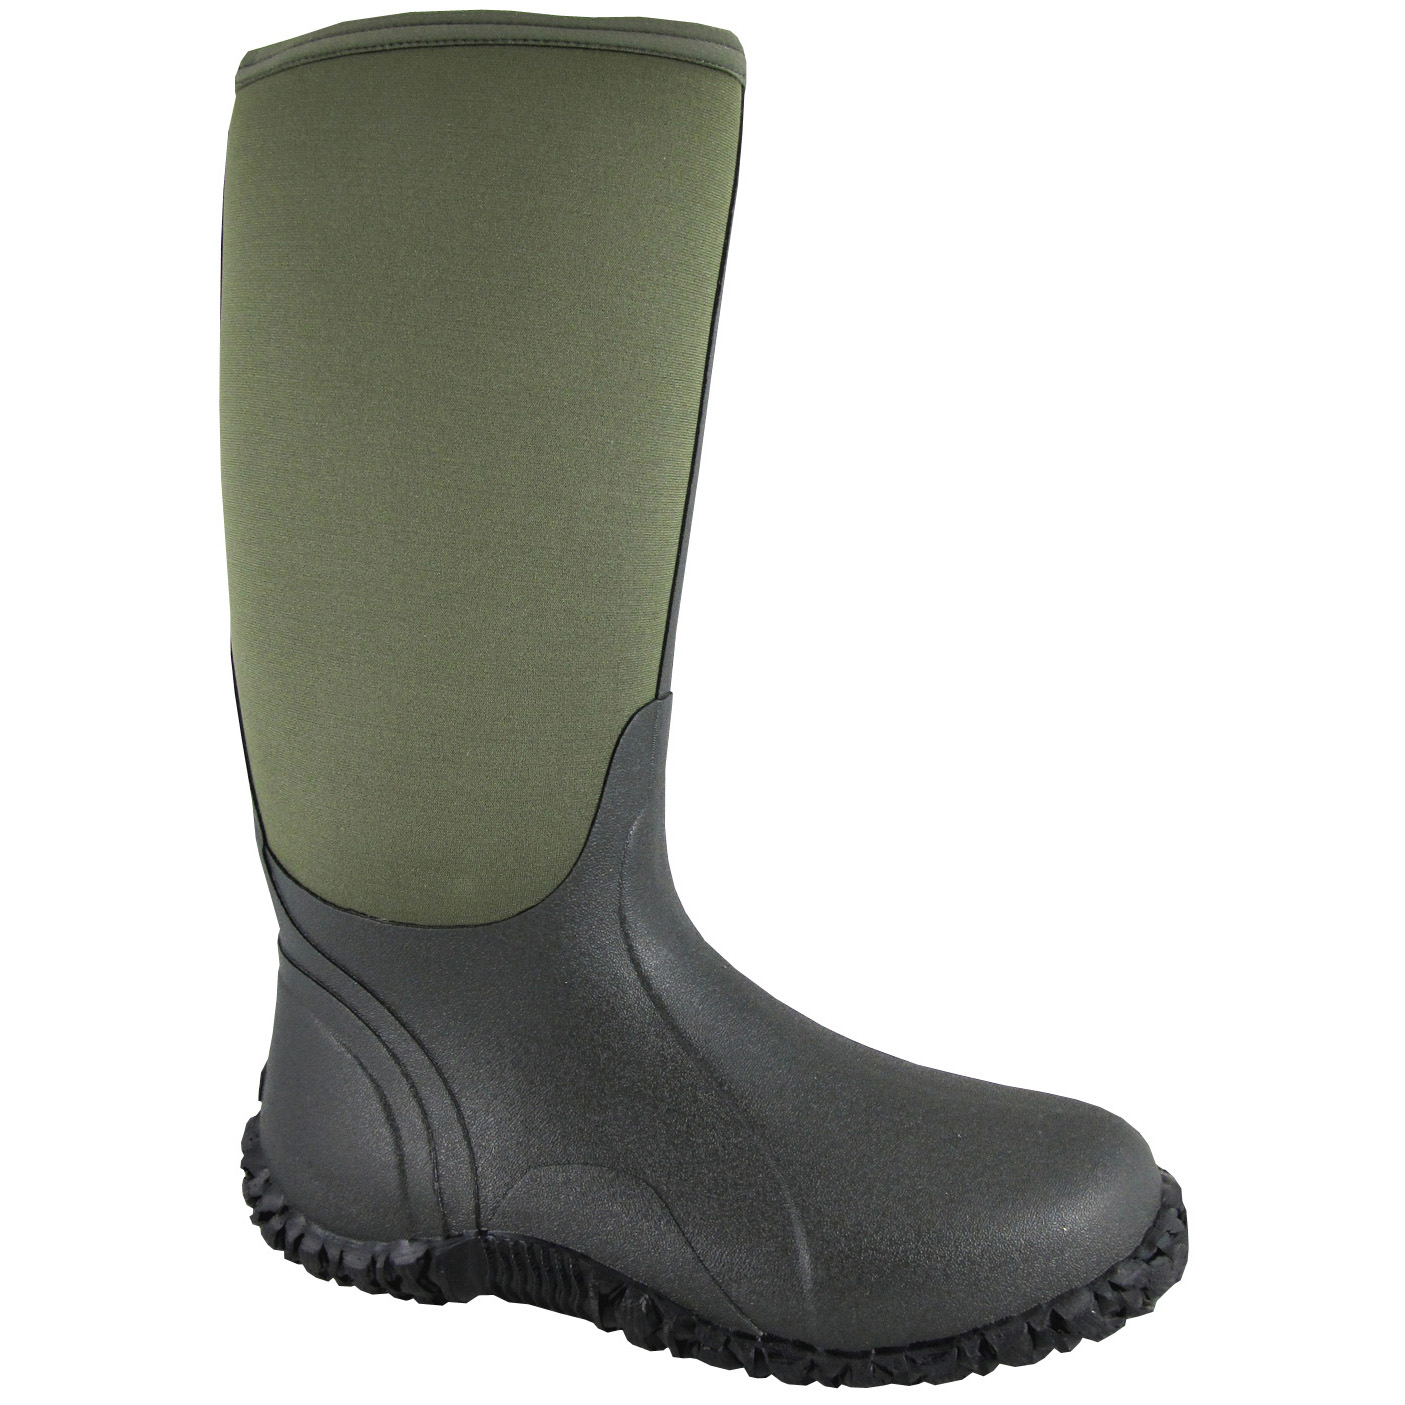 Smoky Mountain Boots Men's 4725 Amphibian 15" Neoprene Waterproof Boot - Green